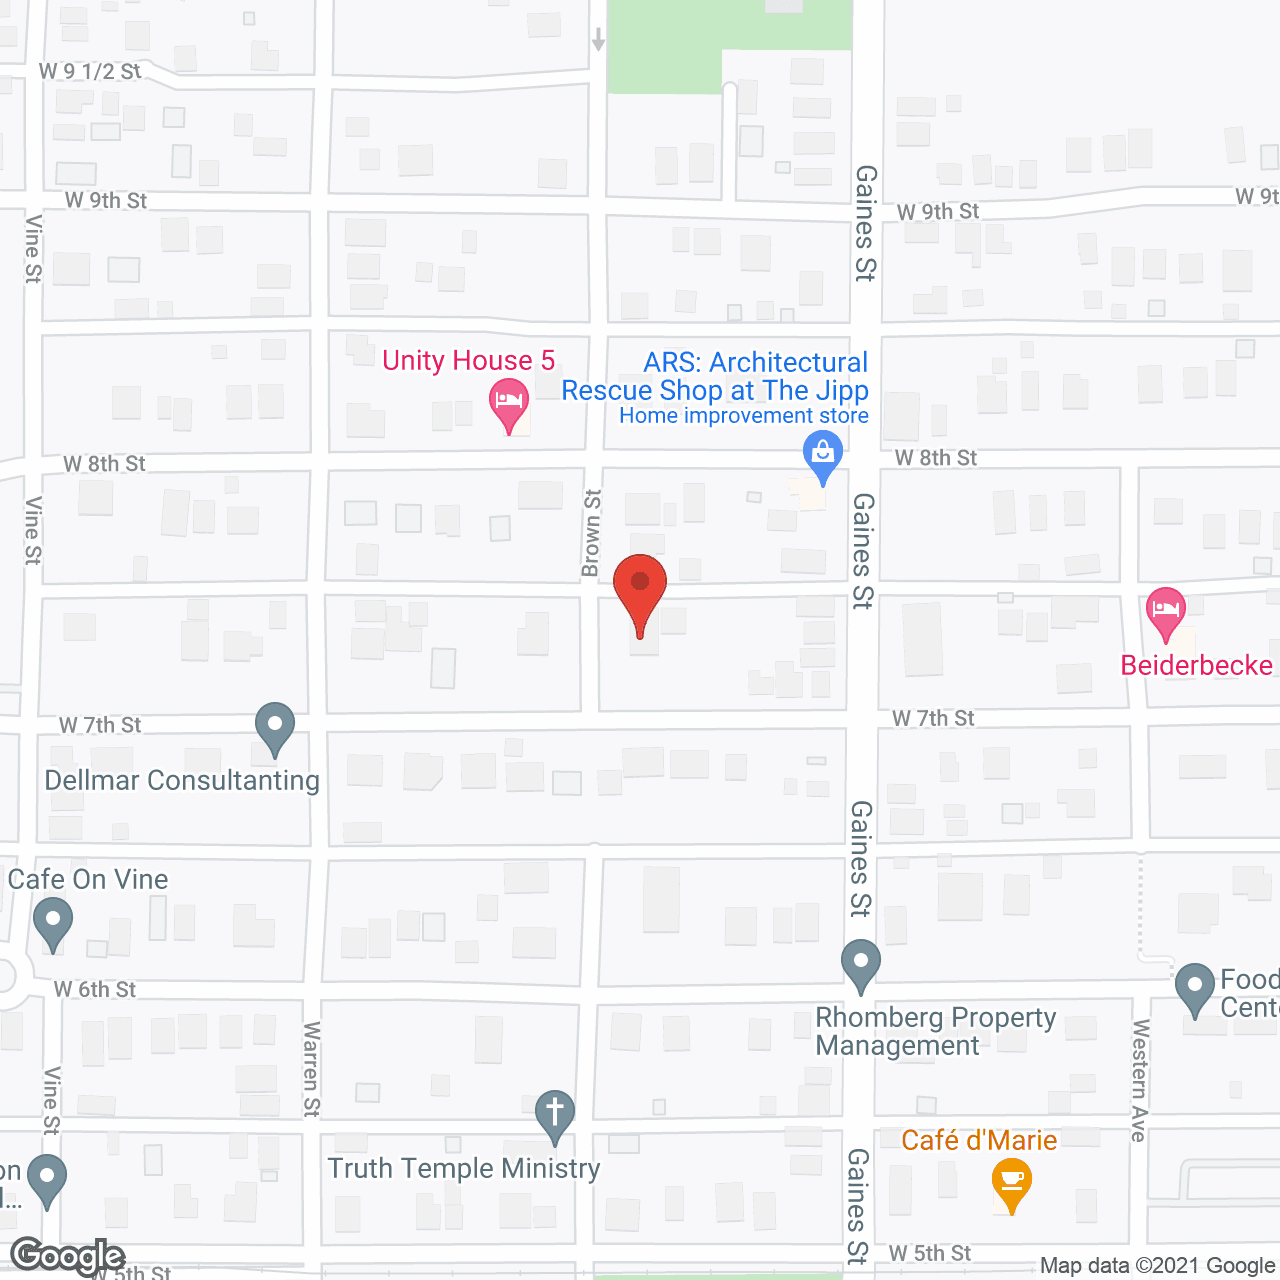 The Postillion Elder Group Home in google map